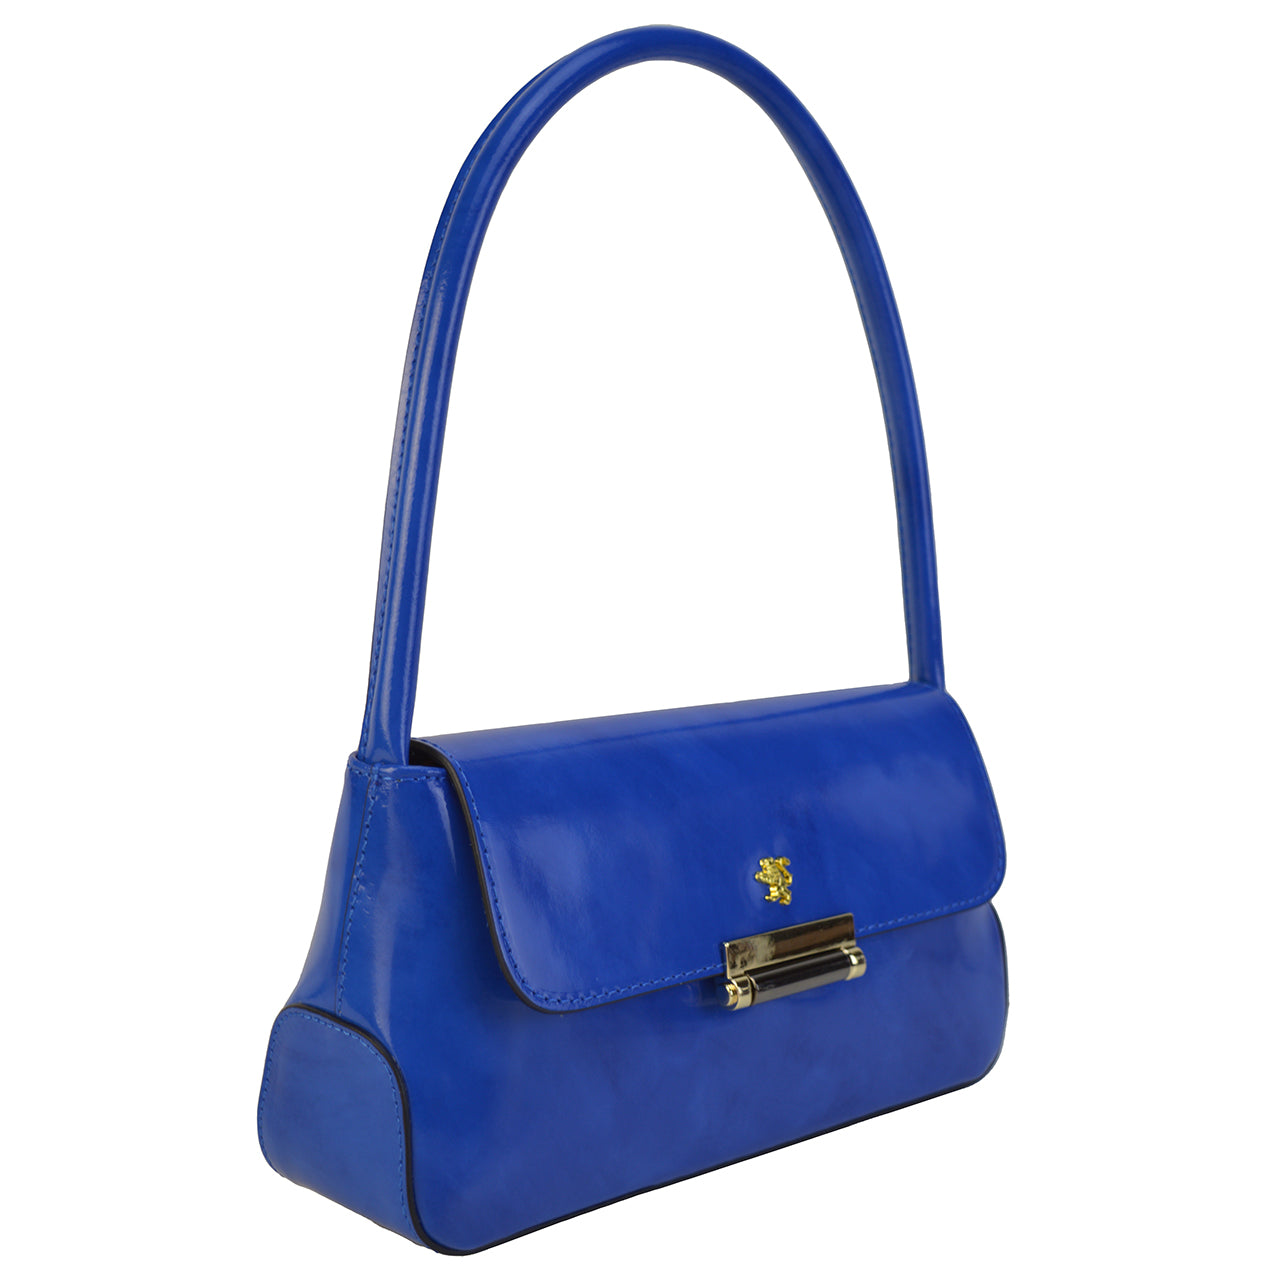 Pratesi Barchetta R290 Lady Bag in cow leather - Radica Electric Blue